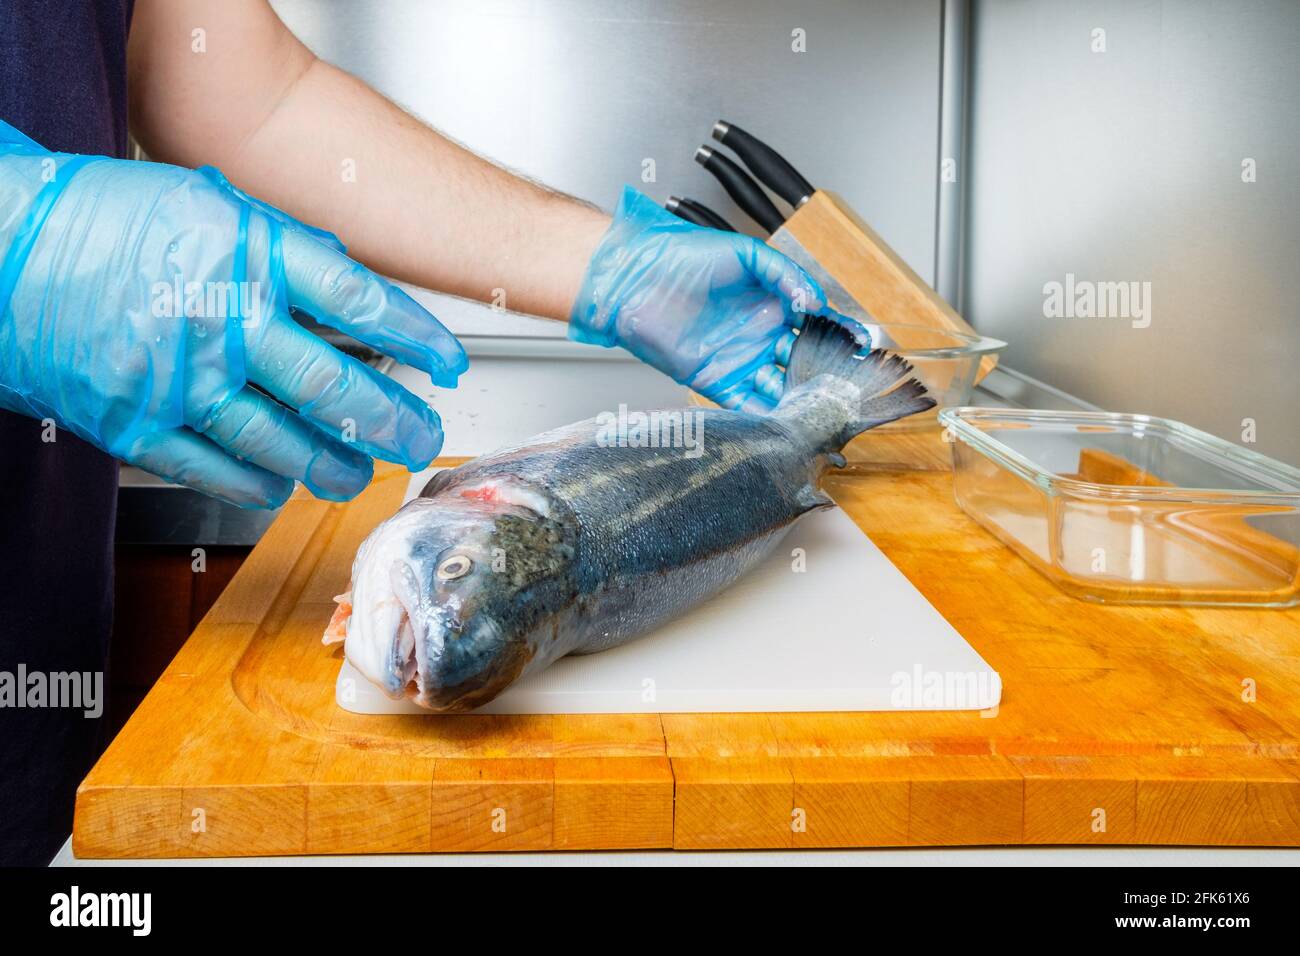 Un cuisinier en gants hygiéniques tient le tronc d'un saumon frais.  Préparation pour couper du poisson dans la cuisine sur une planche à  découper Photo Stock - Alamy